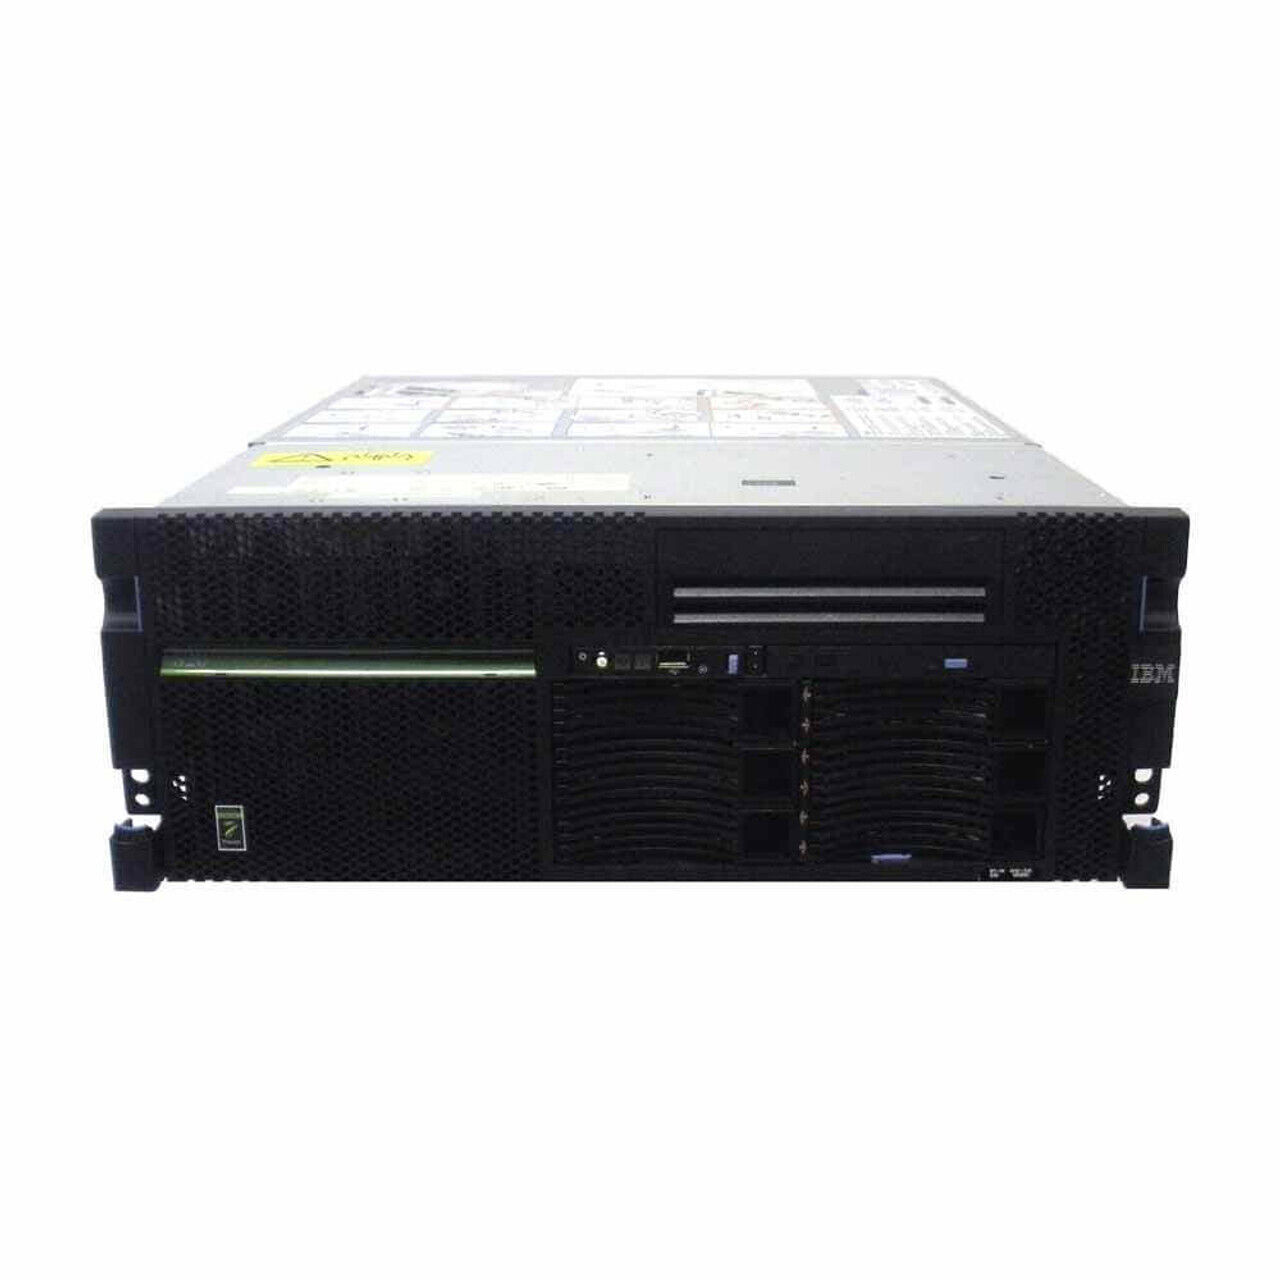 IBM 8202-E4C iSeries Power6 Server - Custom Build to Order